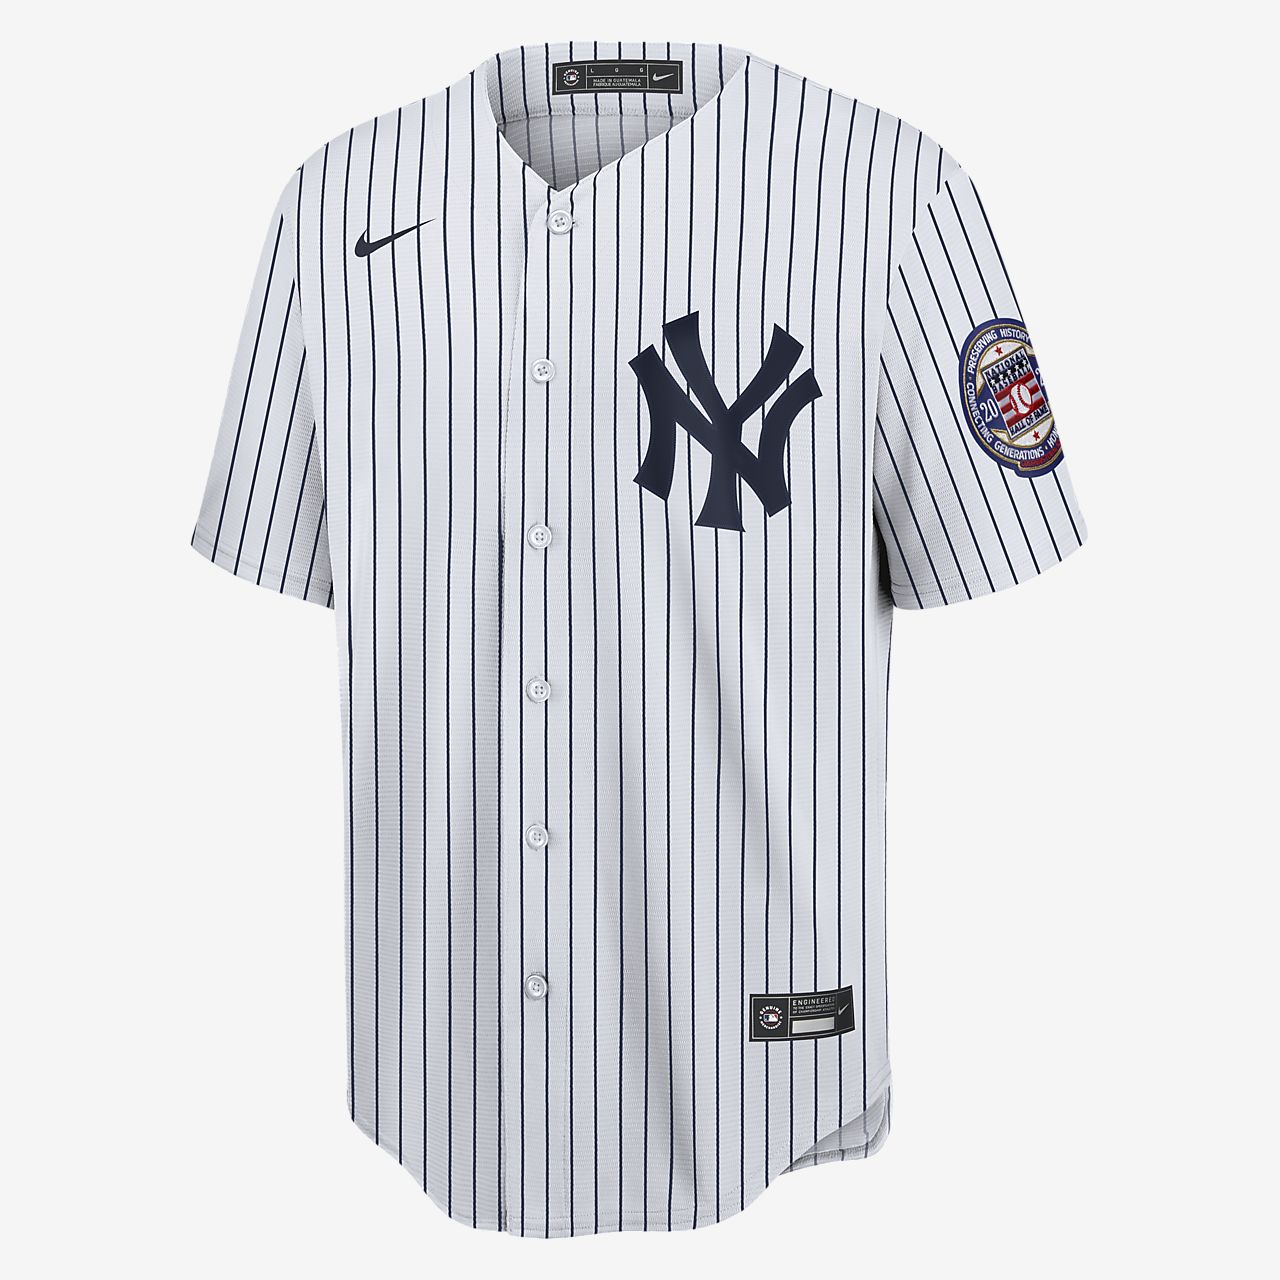 new york jersey shirt